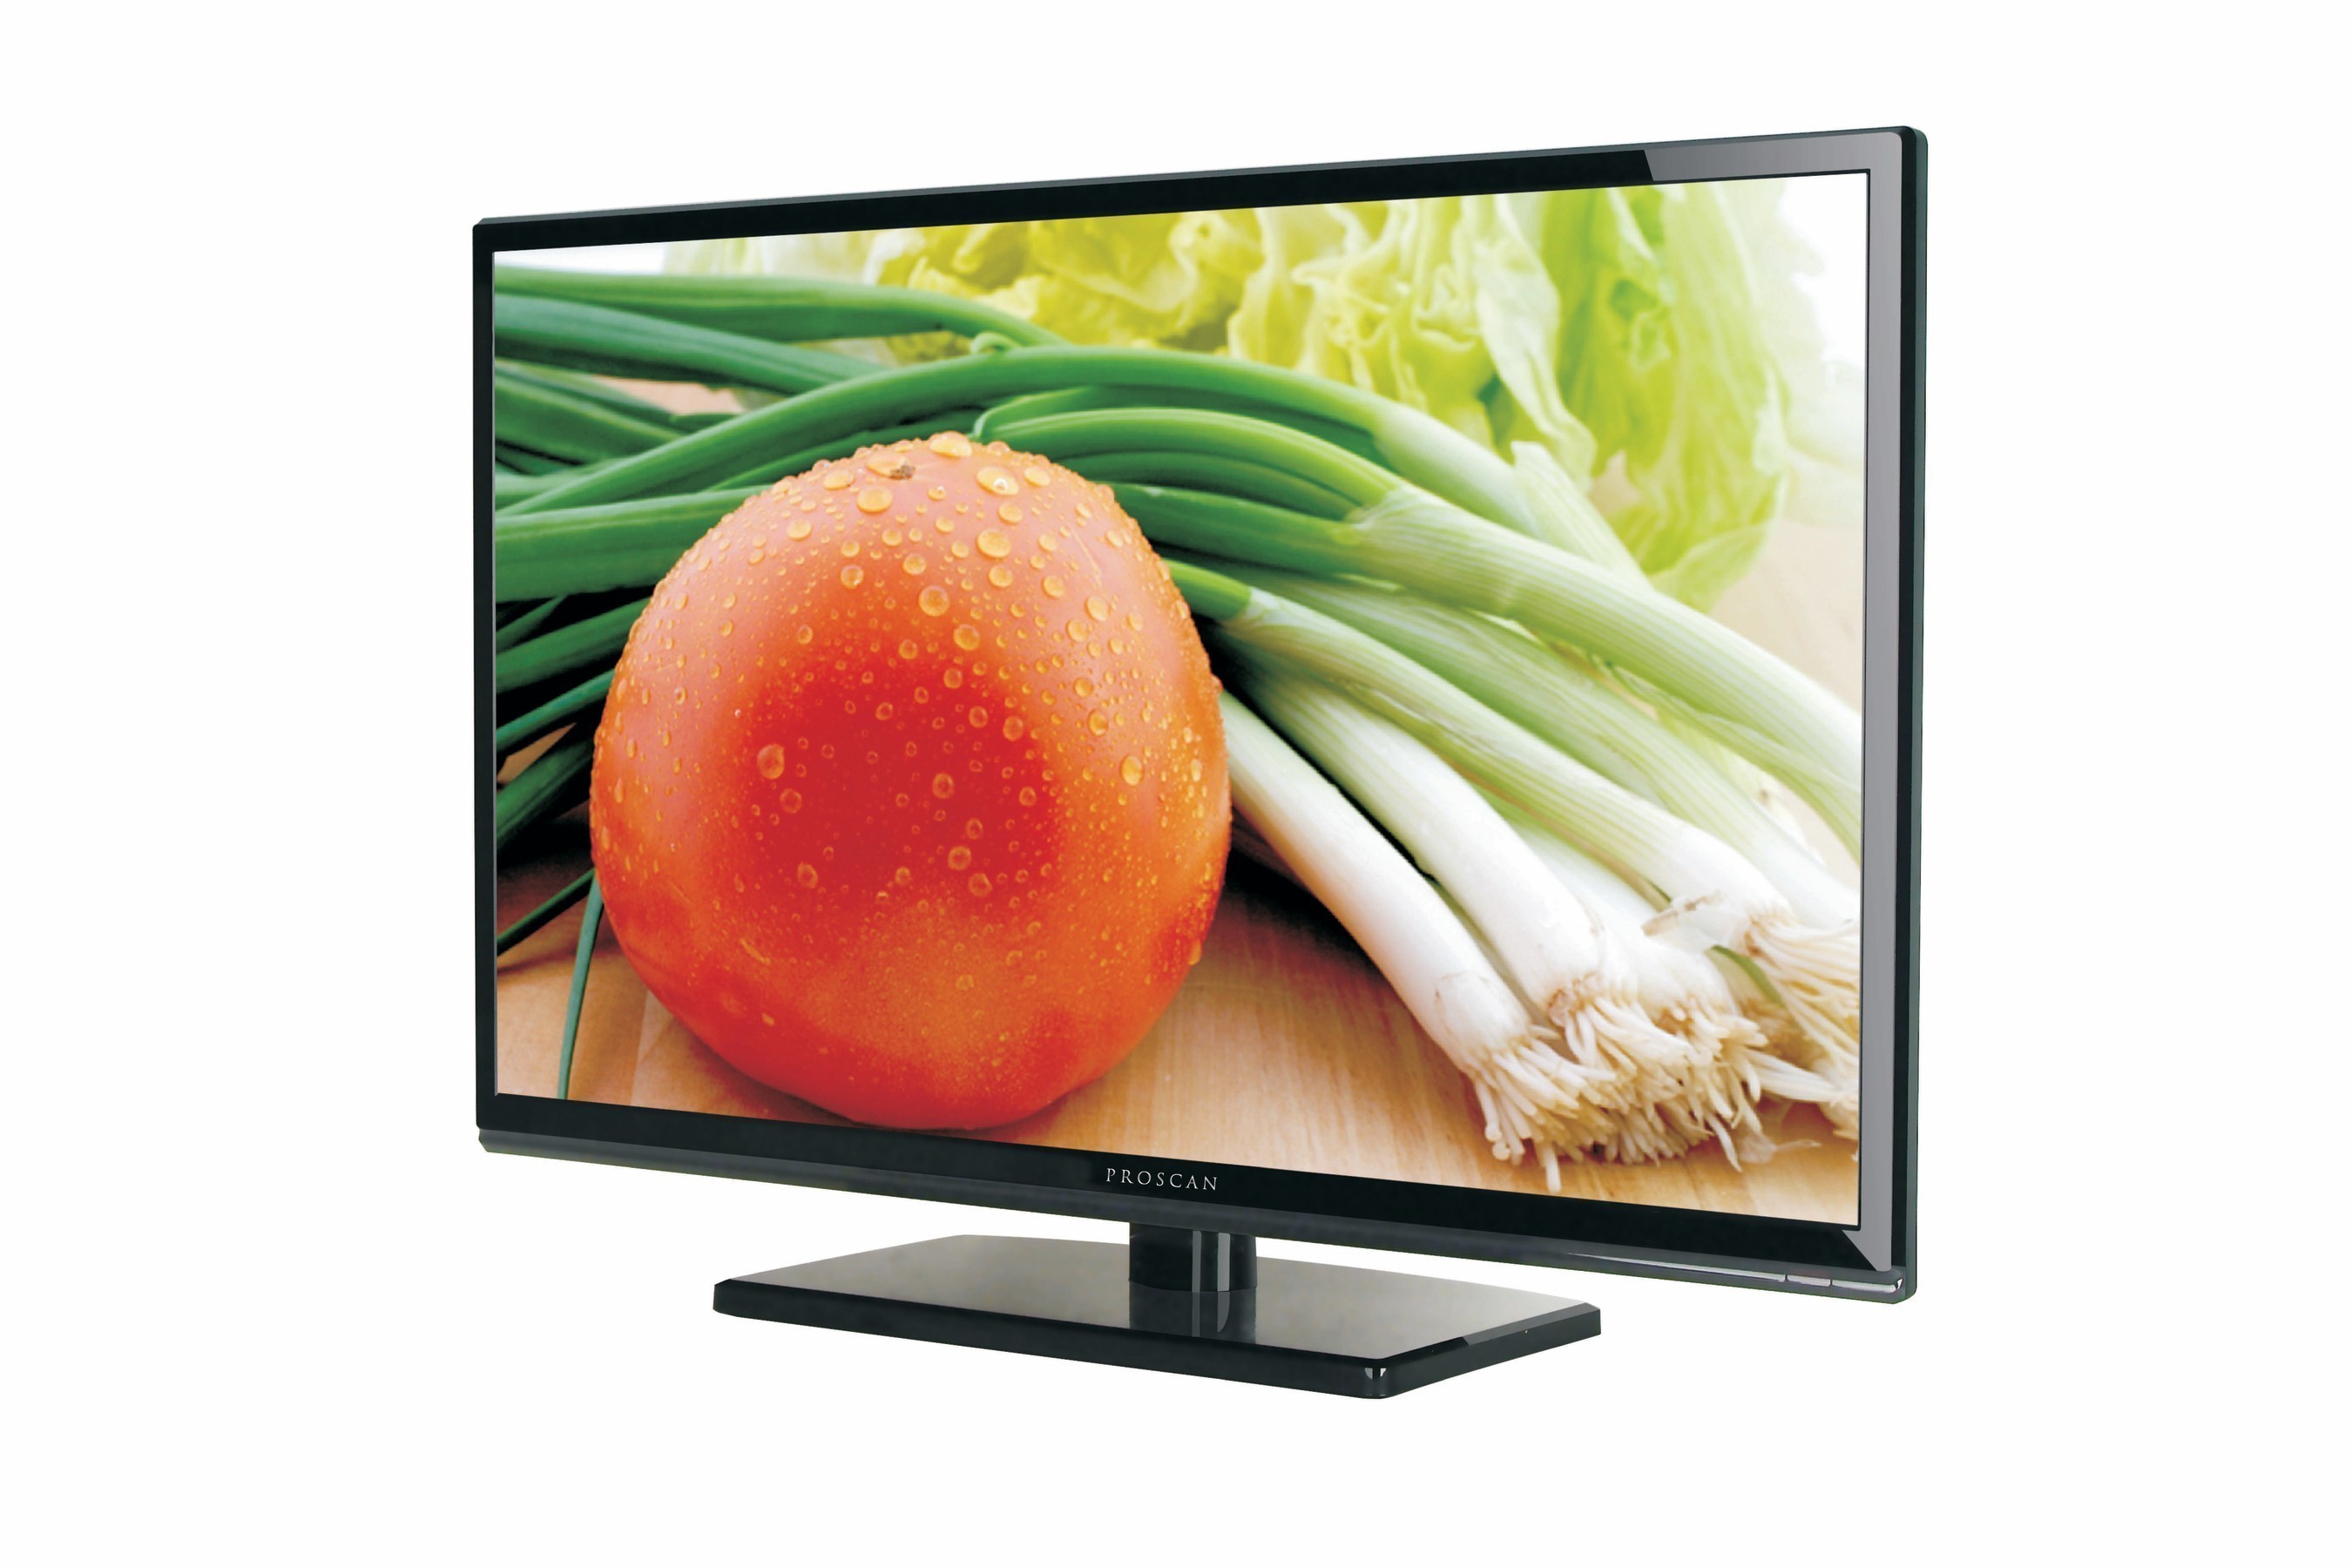 ProScan 39" 720p LED TV